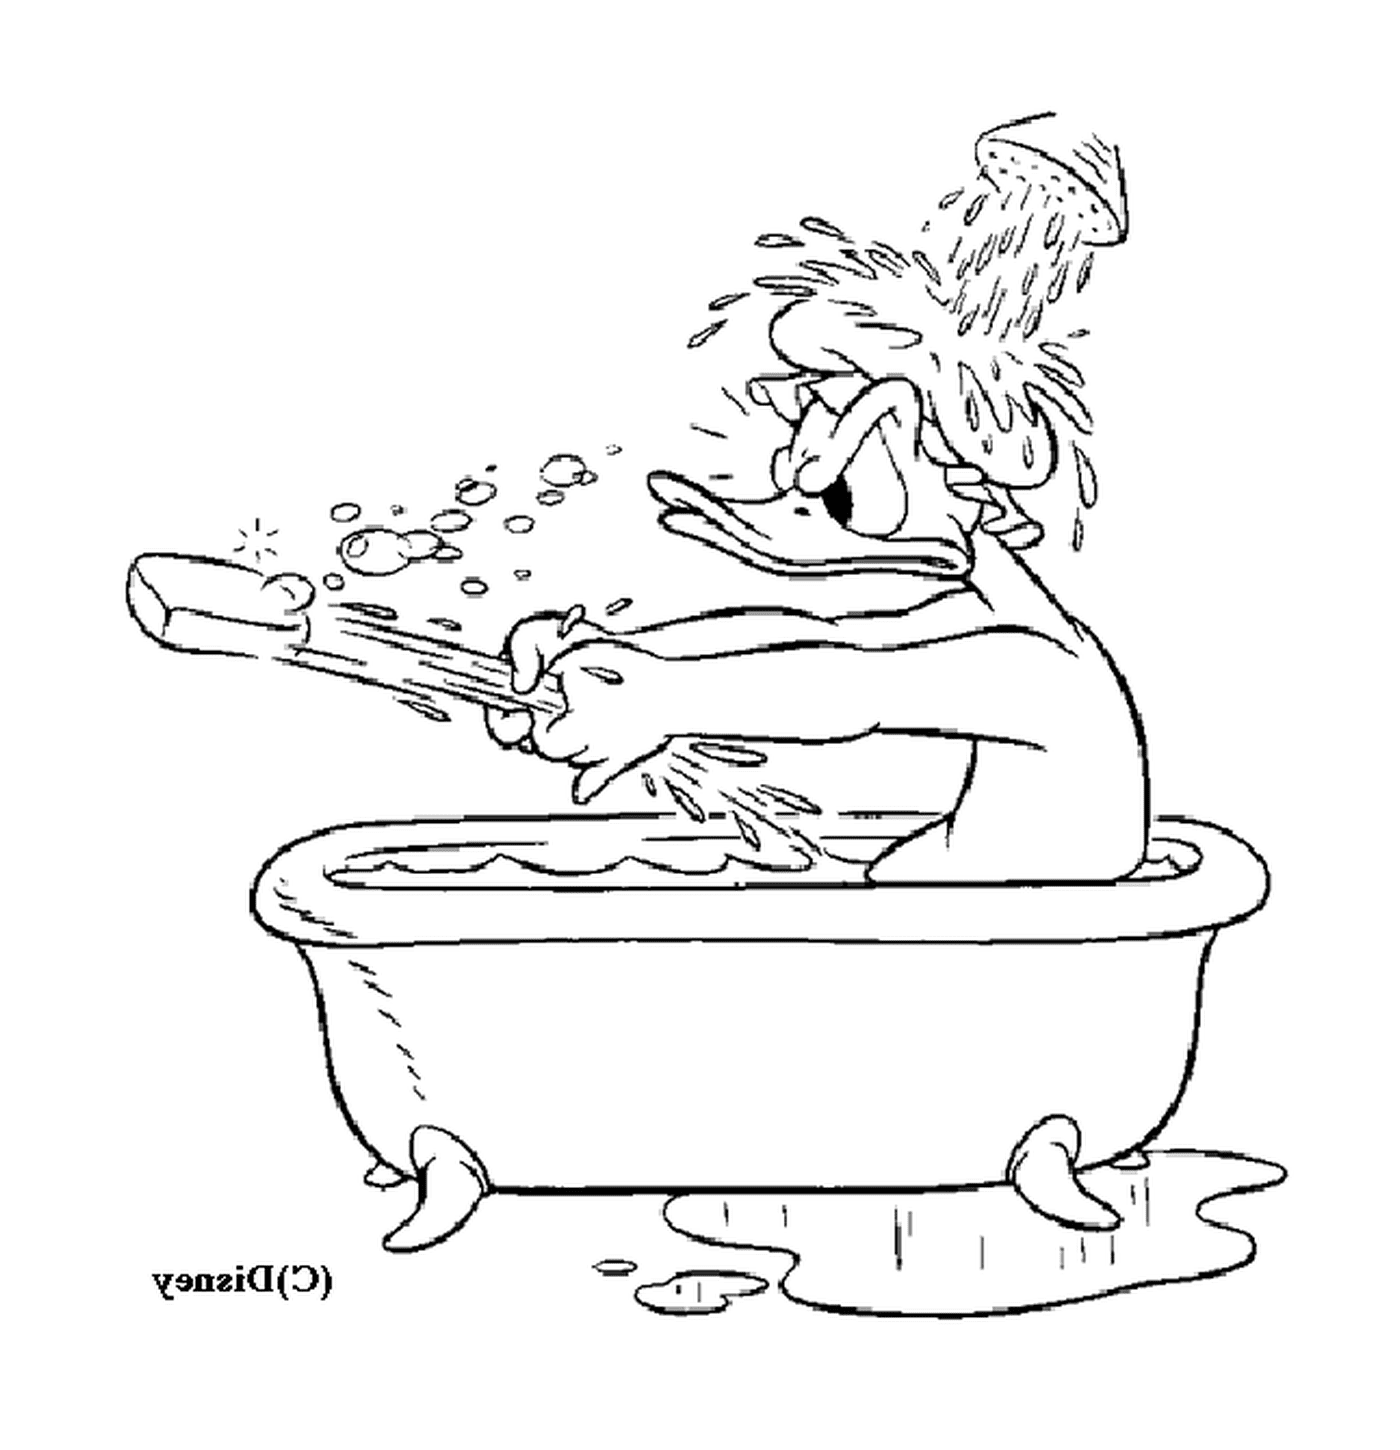  Donald está tomando un baño relajante 